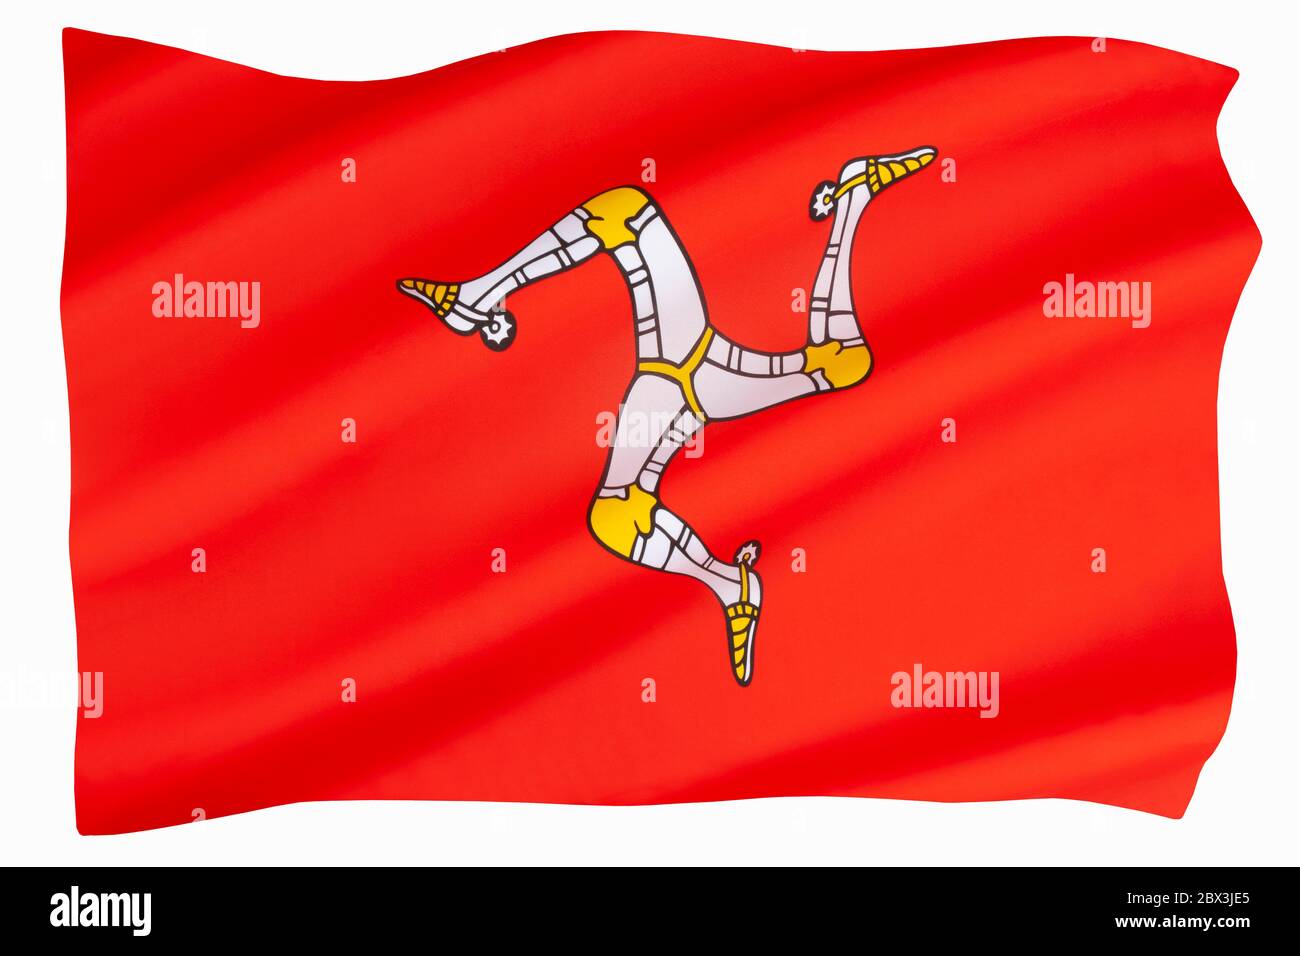 Le drapeau de l'île de Man - une dépendance autonome de la Couronne britannique située dans la mer d'Irlande entre la Grande-Bretagne et l'Irlande. Le symbole 3 jambes Banque D'Images